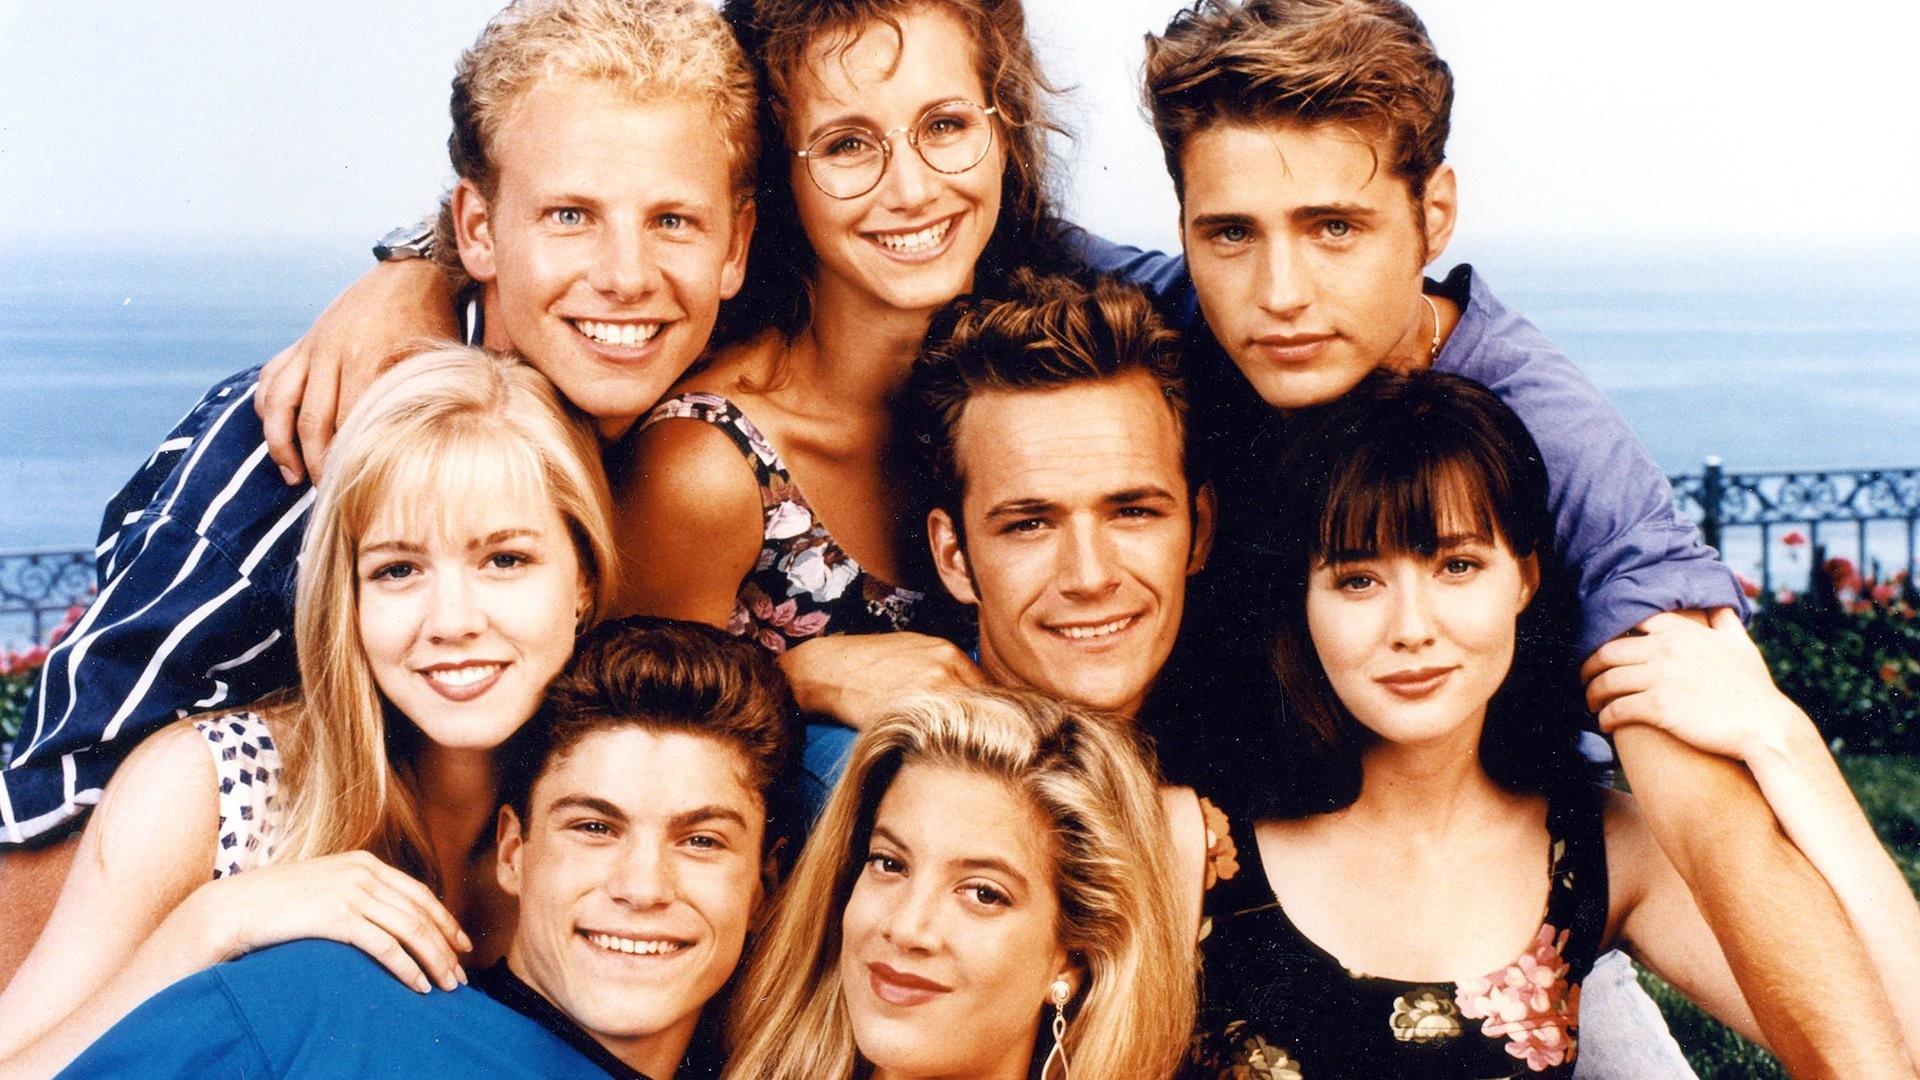 Беверли-Хиллз 90210 – 1 сезон 5 серия «Один на один» / Beverly Hills, 90210